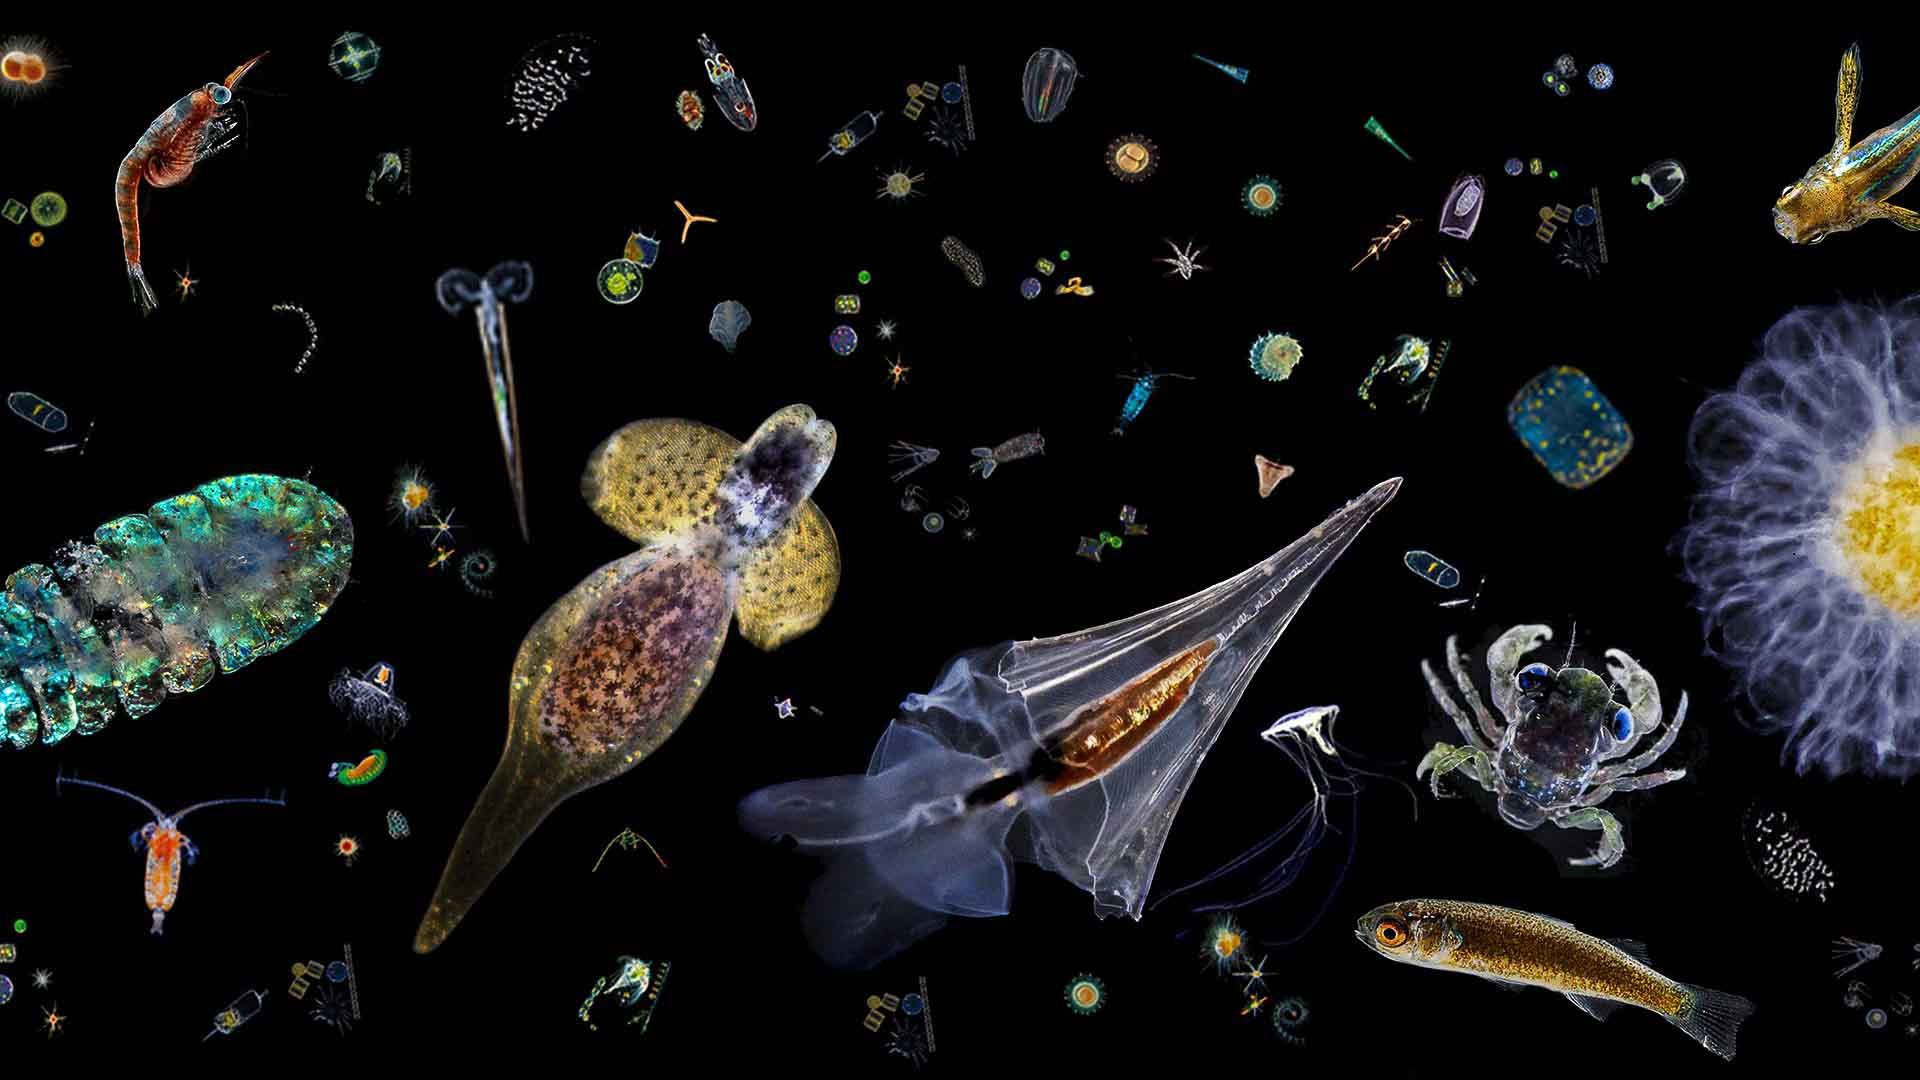 Планктон в жизни